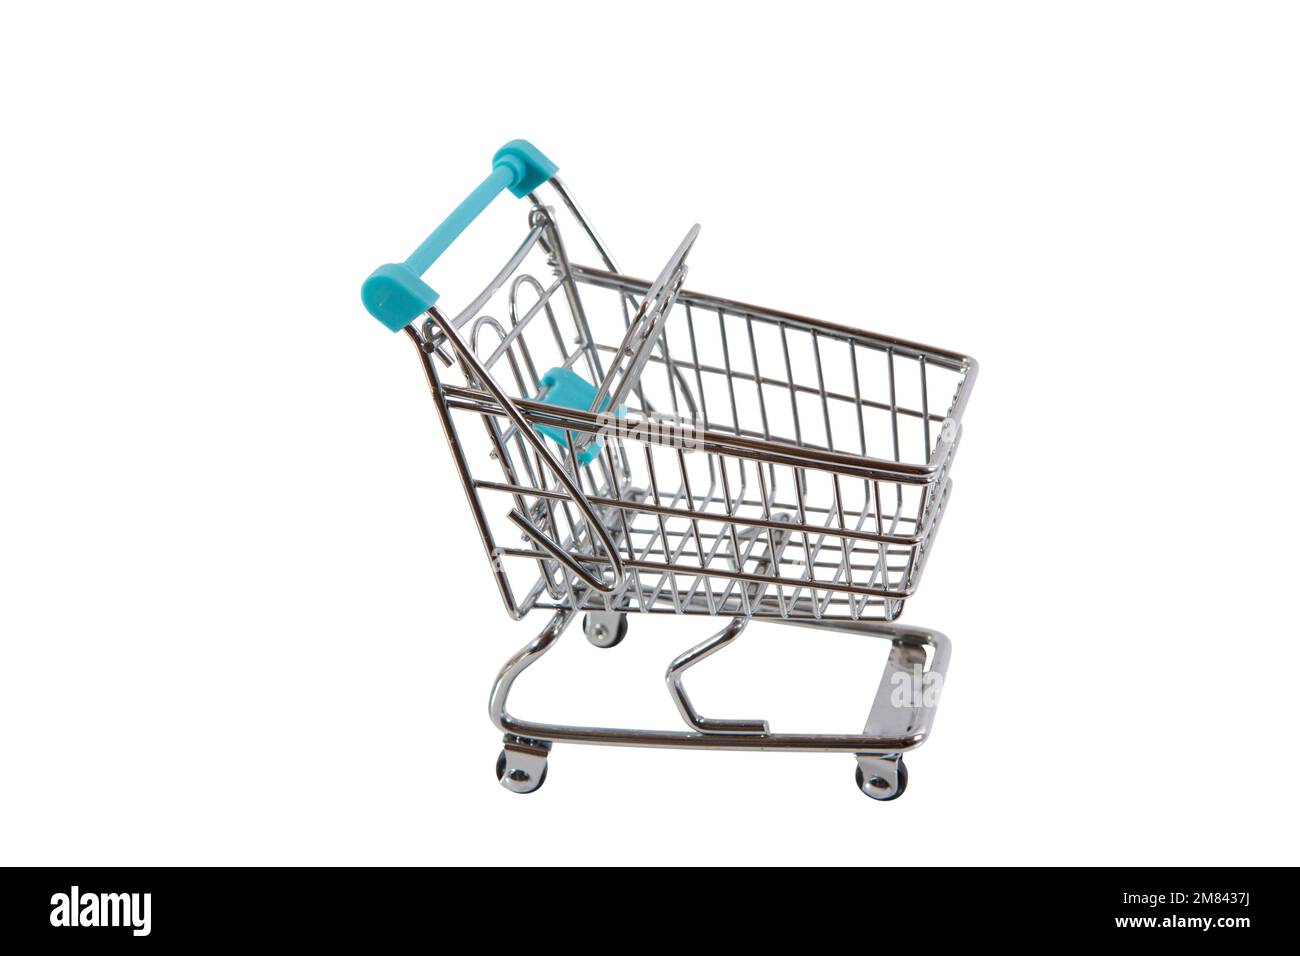 Modell eines Einkaufswagen wie im Supermarkt, hier mit Euroscheinen oder Kleingeld gefüllt. Symbolbild, freigestellt. Stock Photo